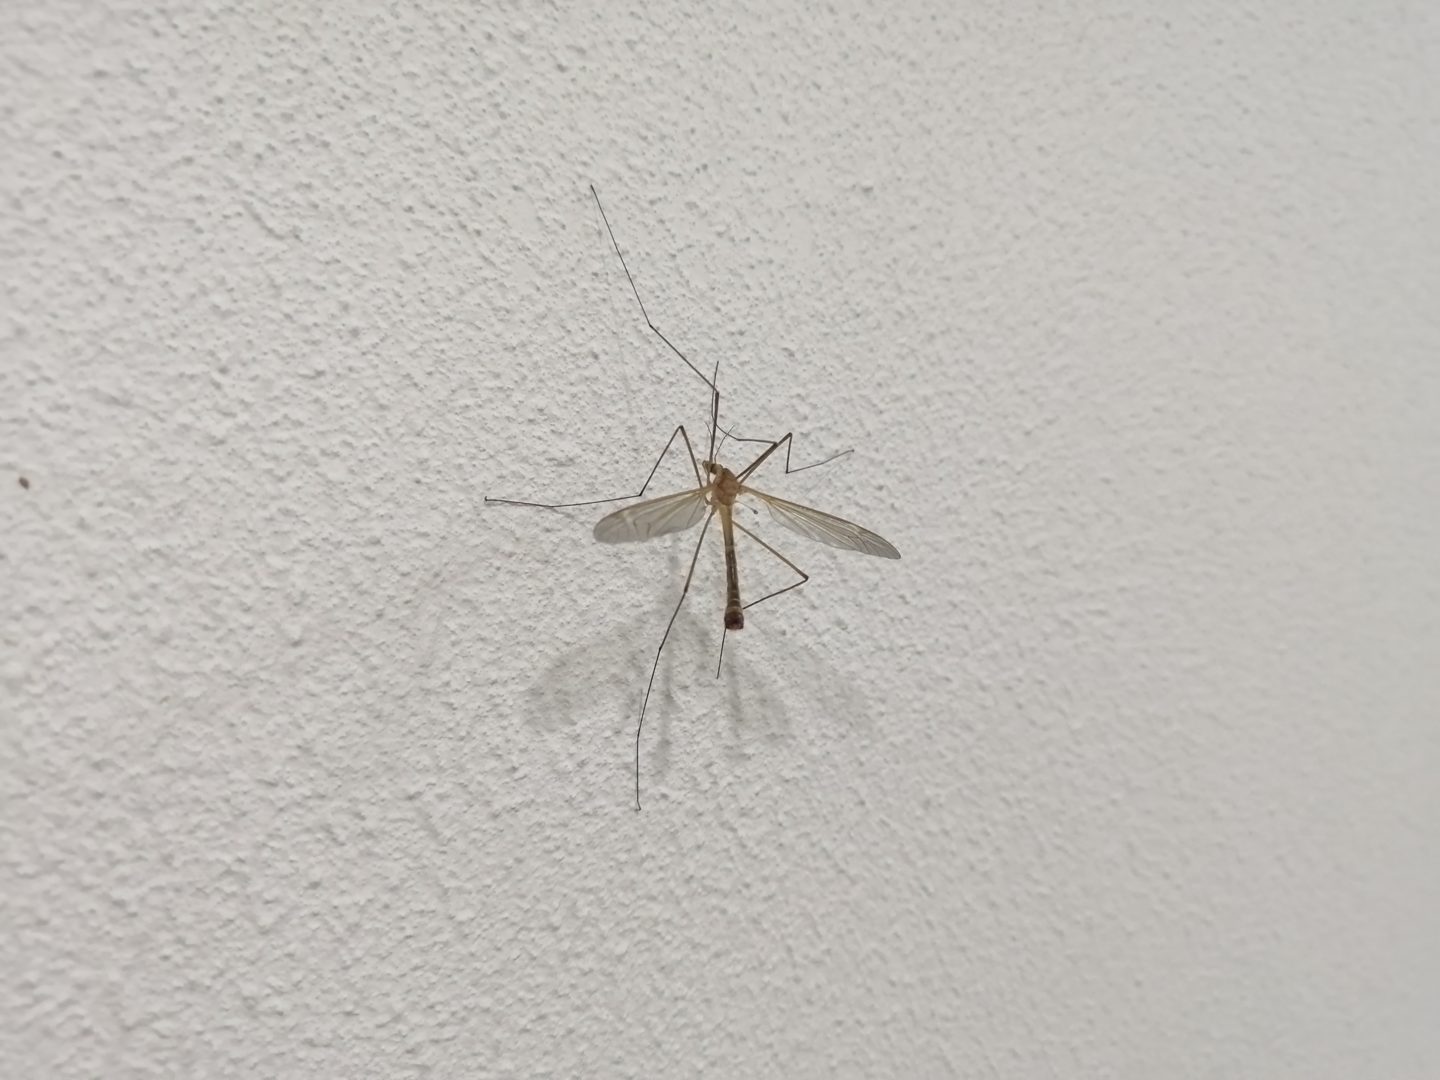 Большой комар на клубнике